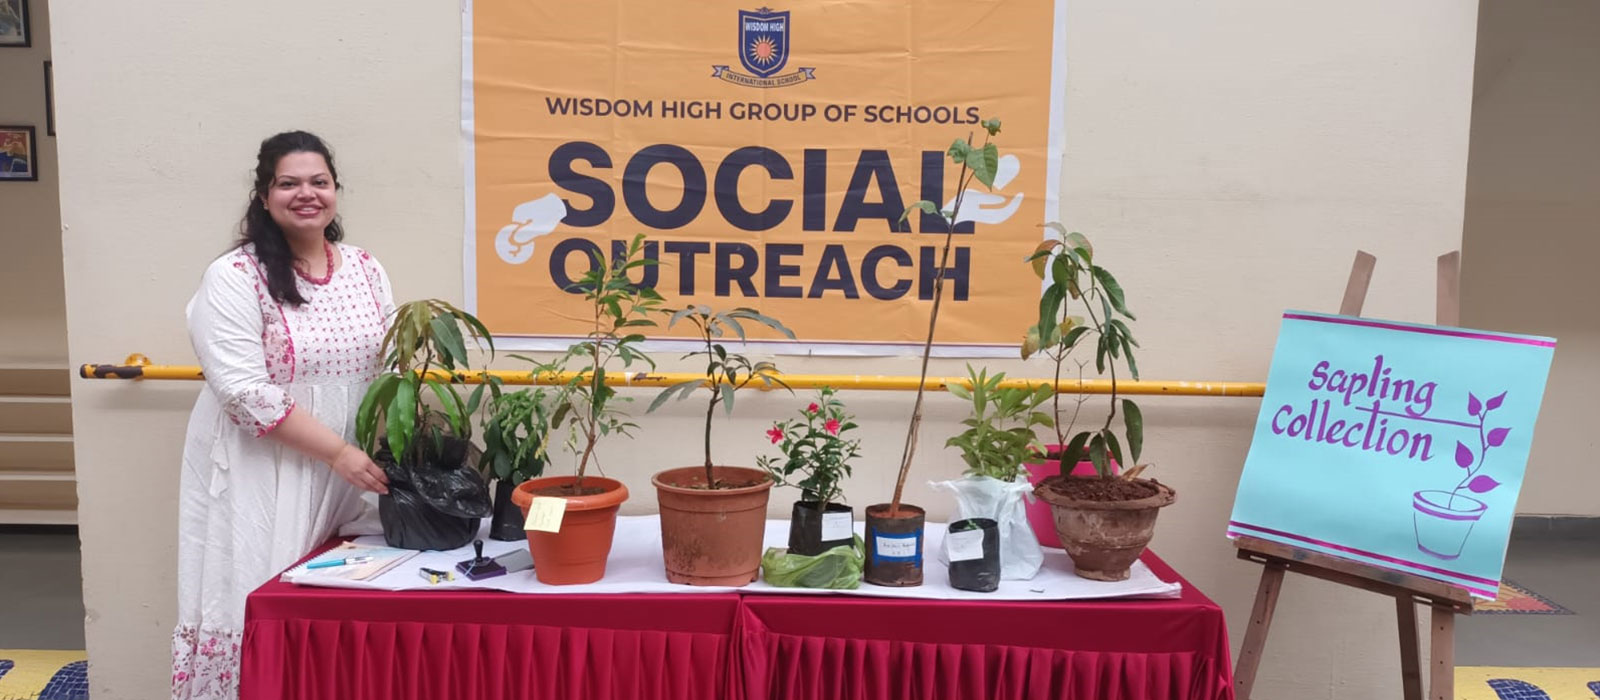 Social Outreach Activities